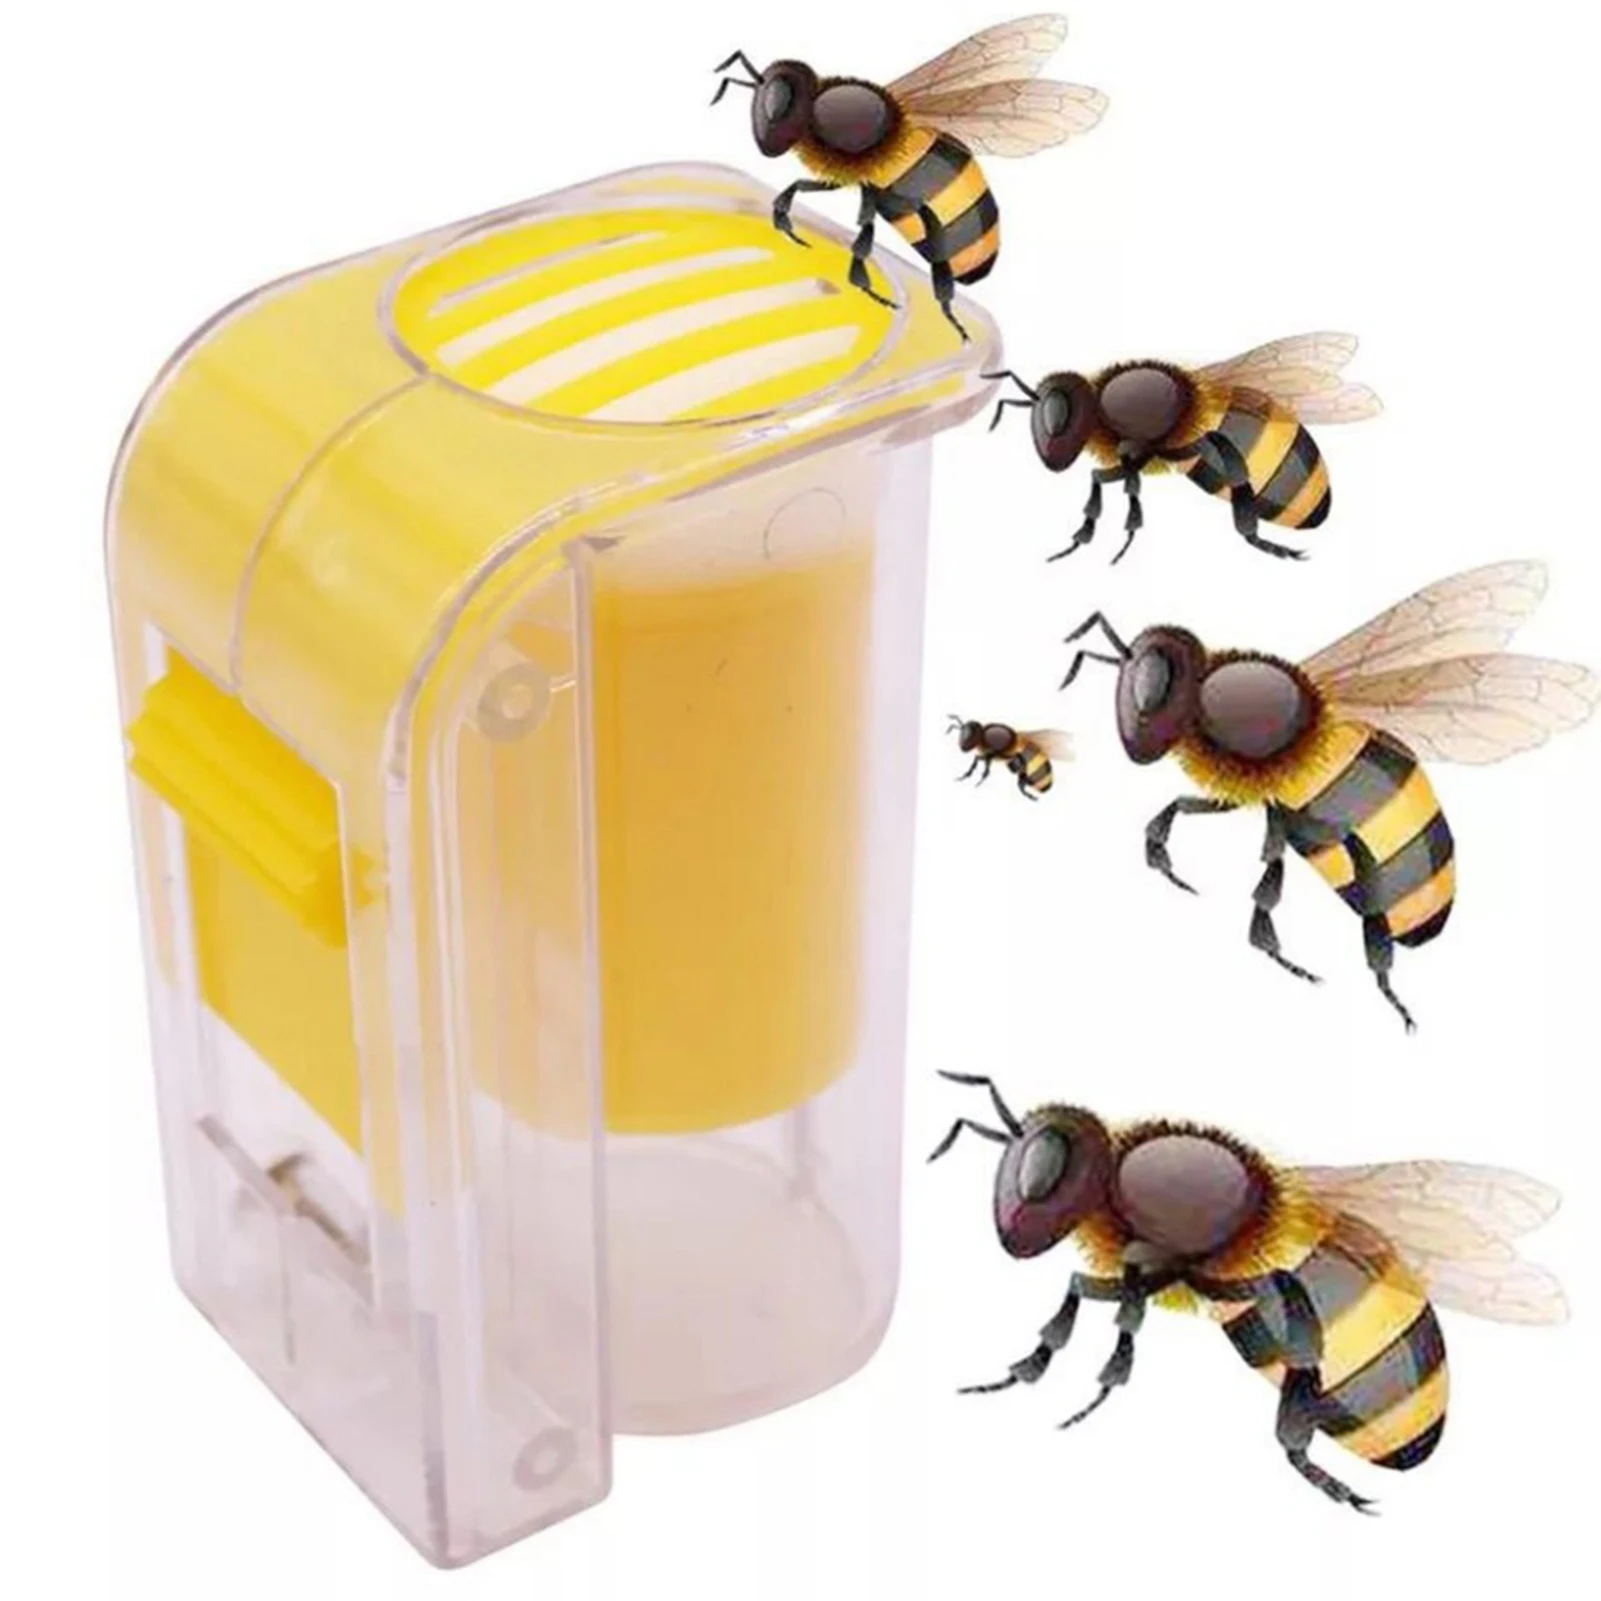 

Клетка для ловли пчелиной королевы, пластиковая клетка для одной руки, практичный инструмент для пчеловодства для ловли пчелы королевы